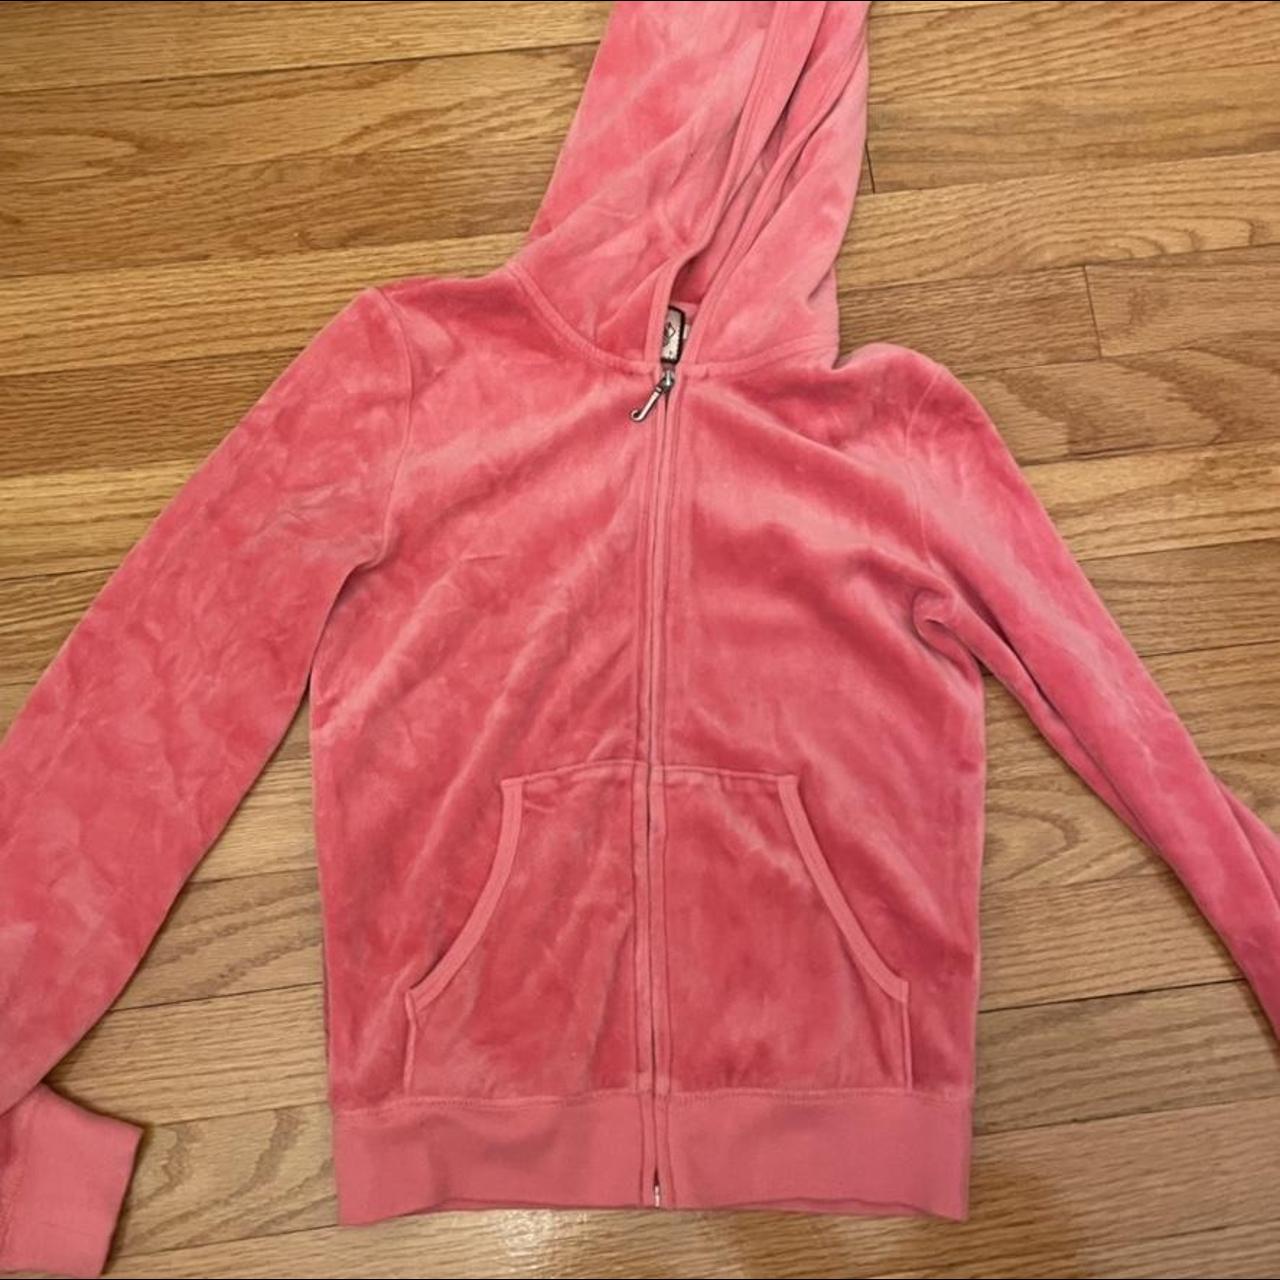 Juicy couture hot pink zip up sweatshirt, in mint... - Depop